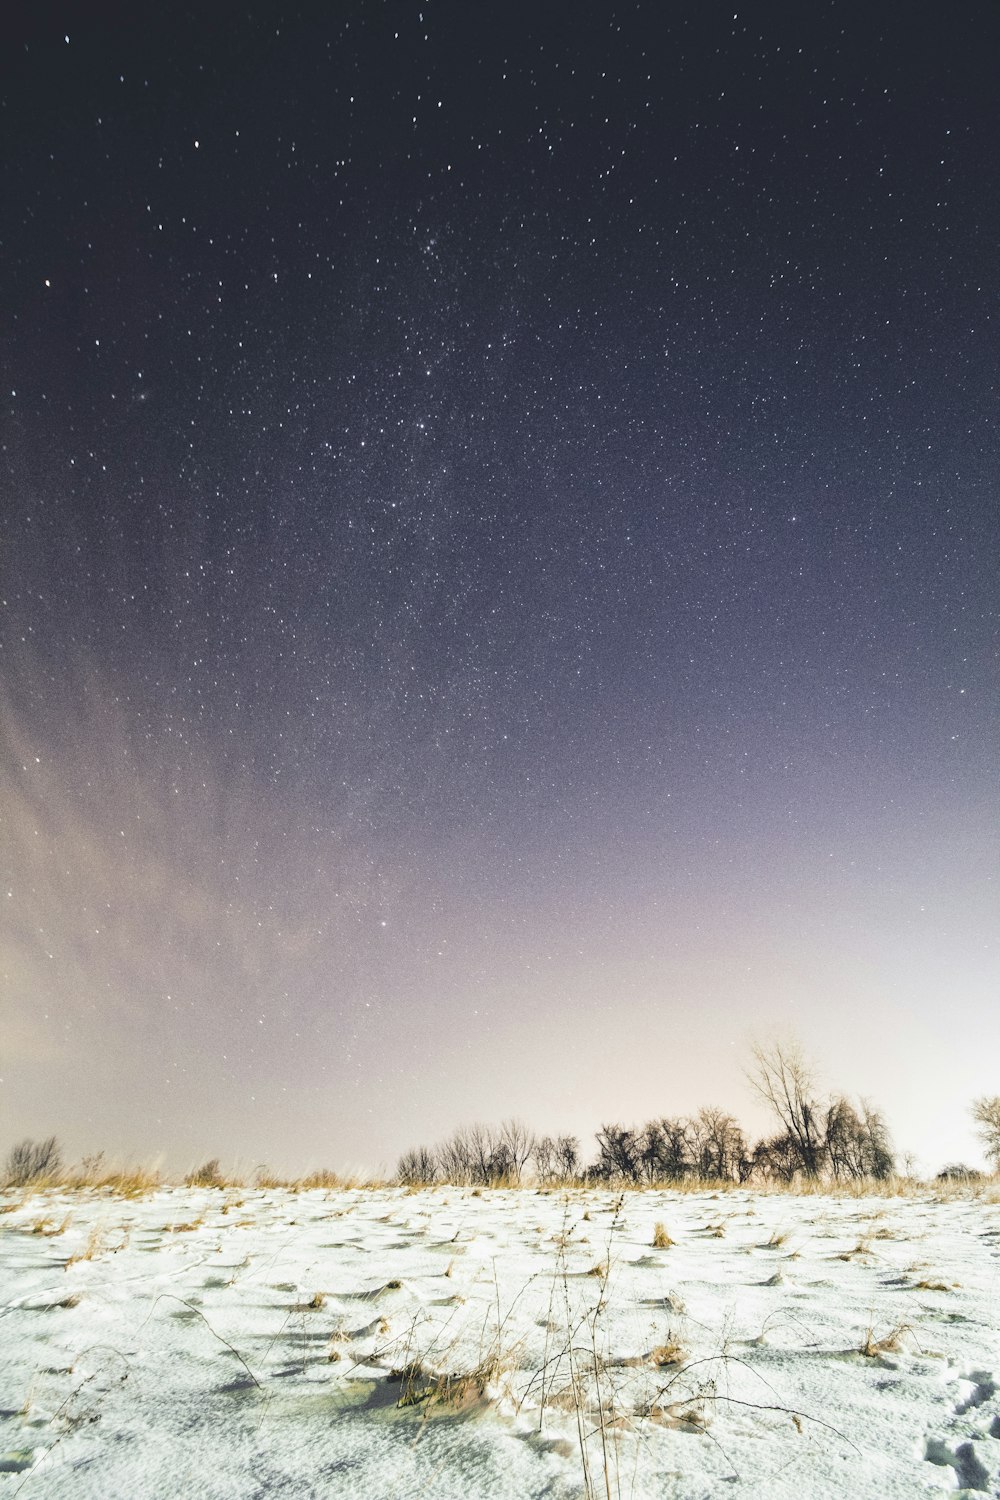 tierra cubierta de nieve bajo el cielo lleno de estrellas